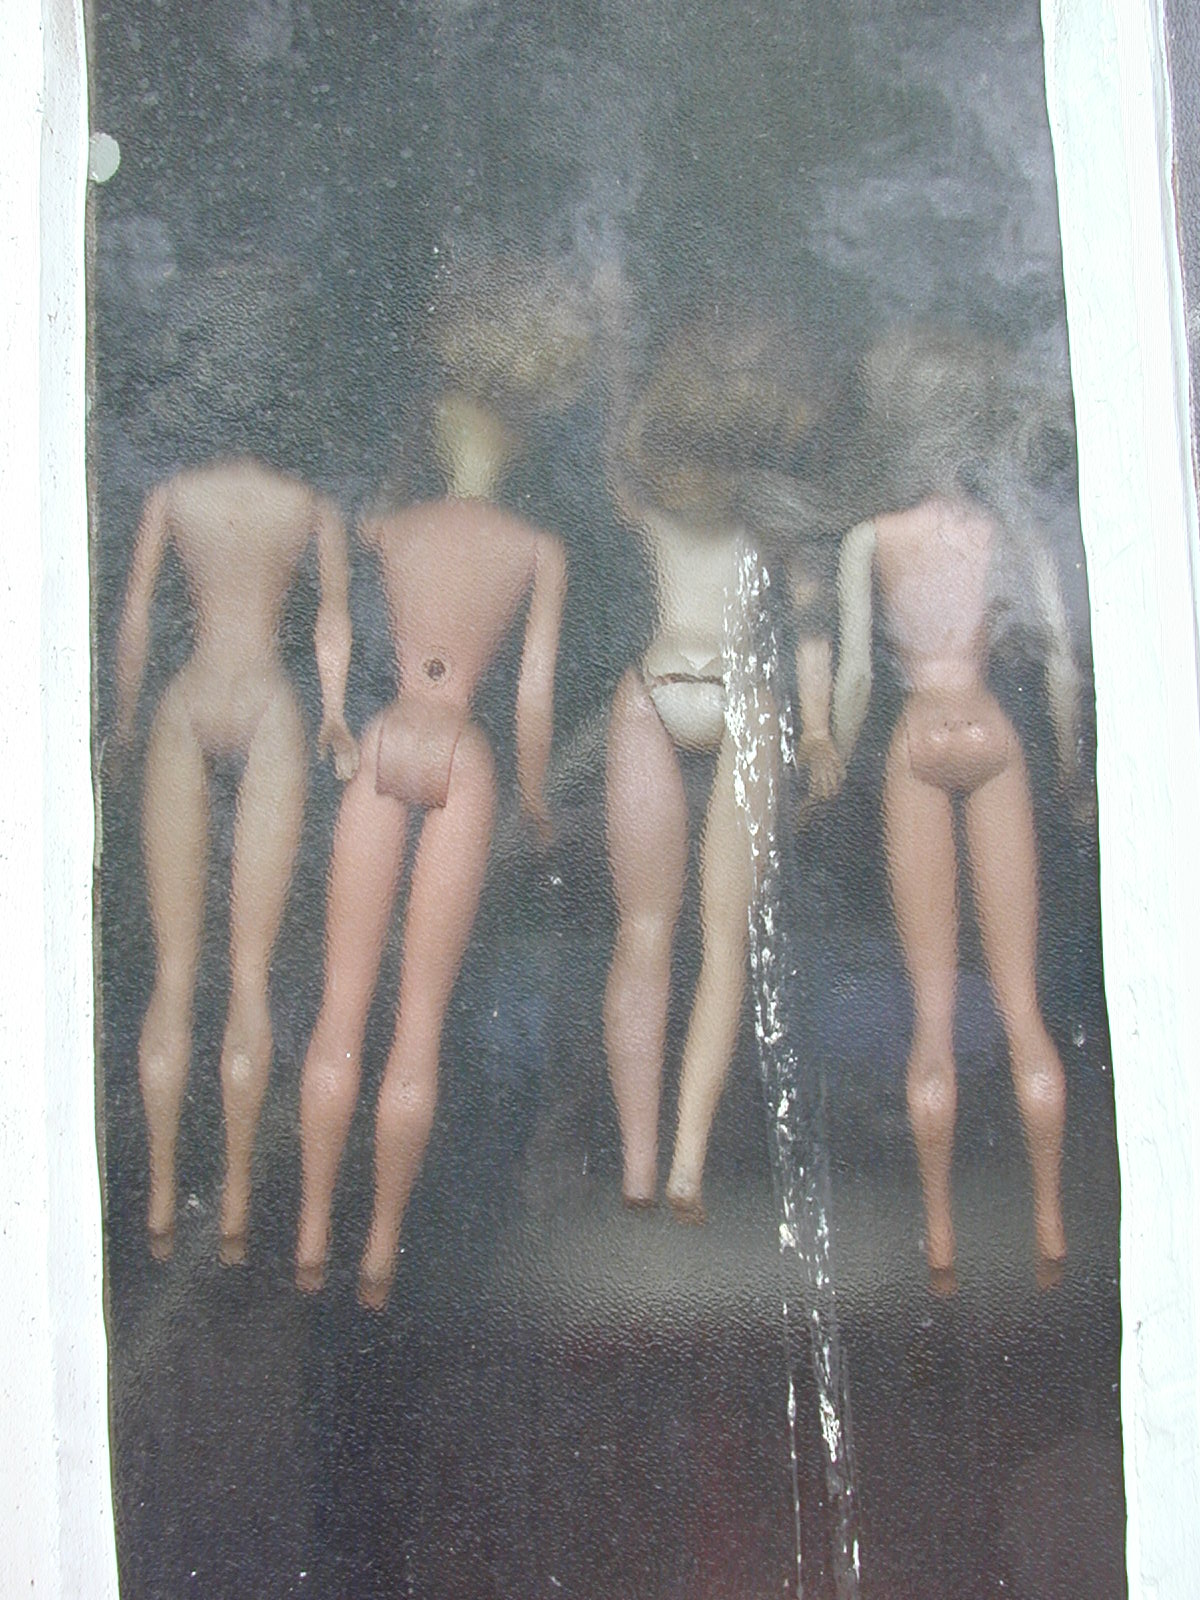 Image After Photos Butt Ars Ass Bum Doll Dolls Barbie Barbies Barbiedoll Barbiedolls Behind